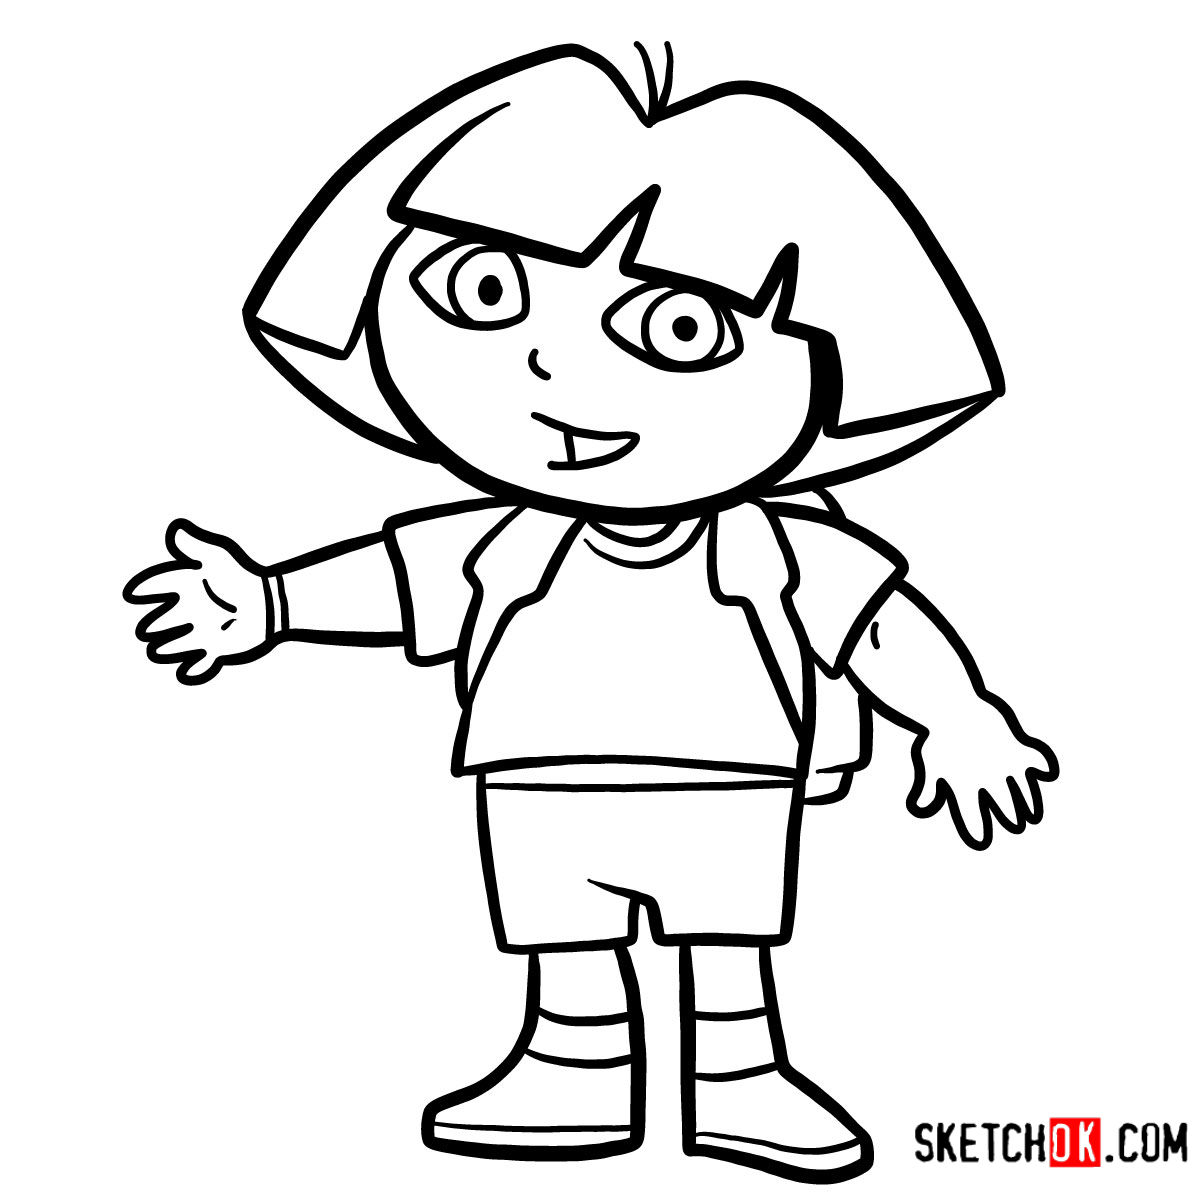 How to draw Dora the Explorer